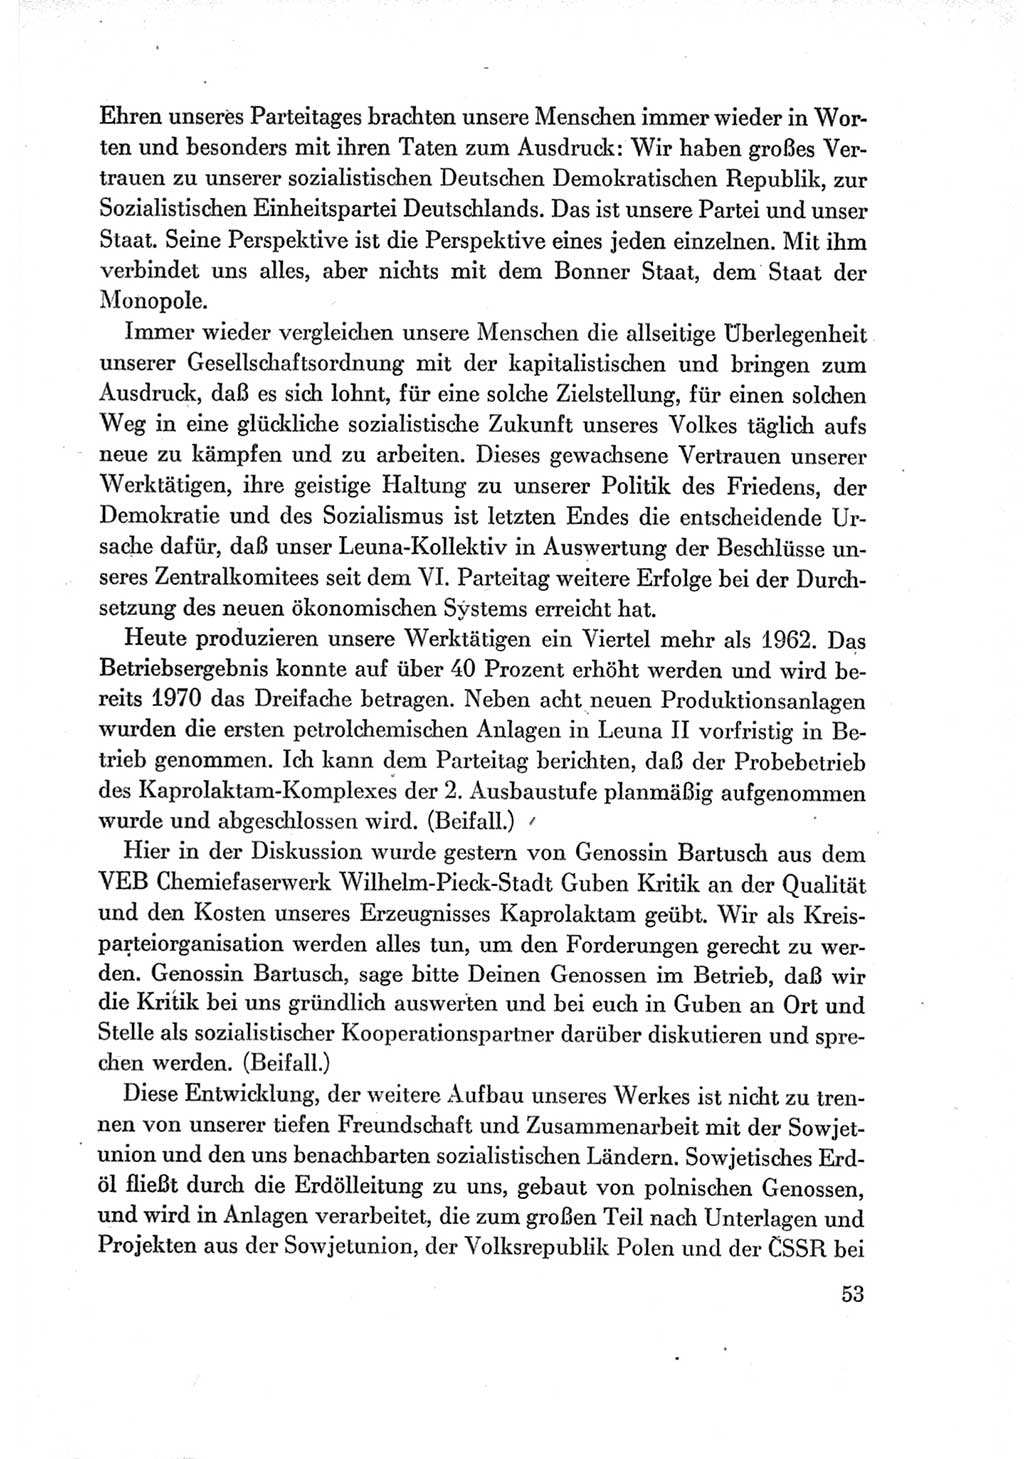 Protokoll der Verhandlungen des Ⅶ. Parteitages der Sozialistischen Einheitspartei Deutschlands (SED) [Deutsche Demokratische Republik (DDR)] 1967, Band Ⅱ, Seite 53 (Prot. Verh. Ⅶ. PT SED DDR 1967, Bd. Ⅱ, S. 53)